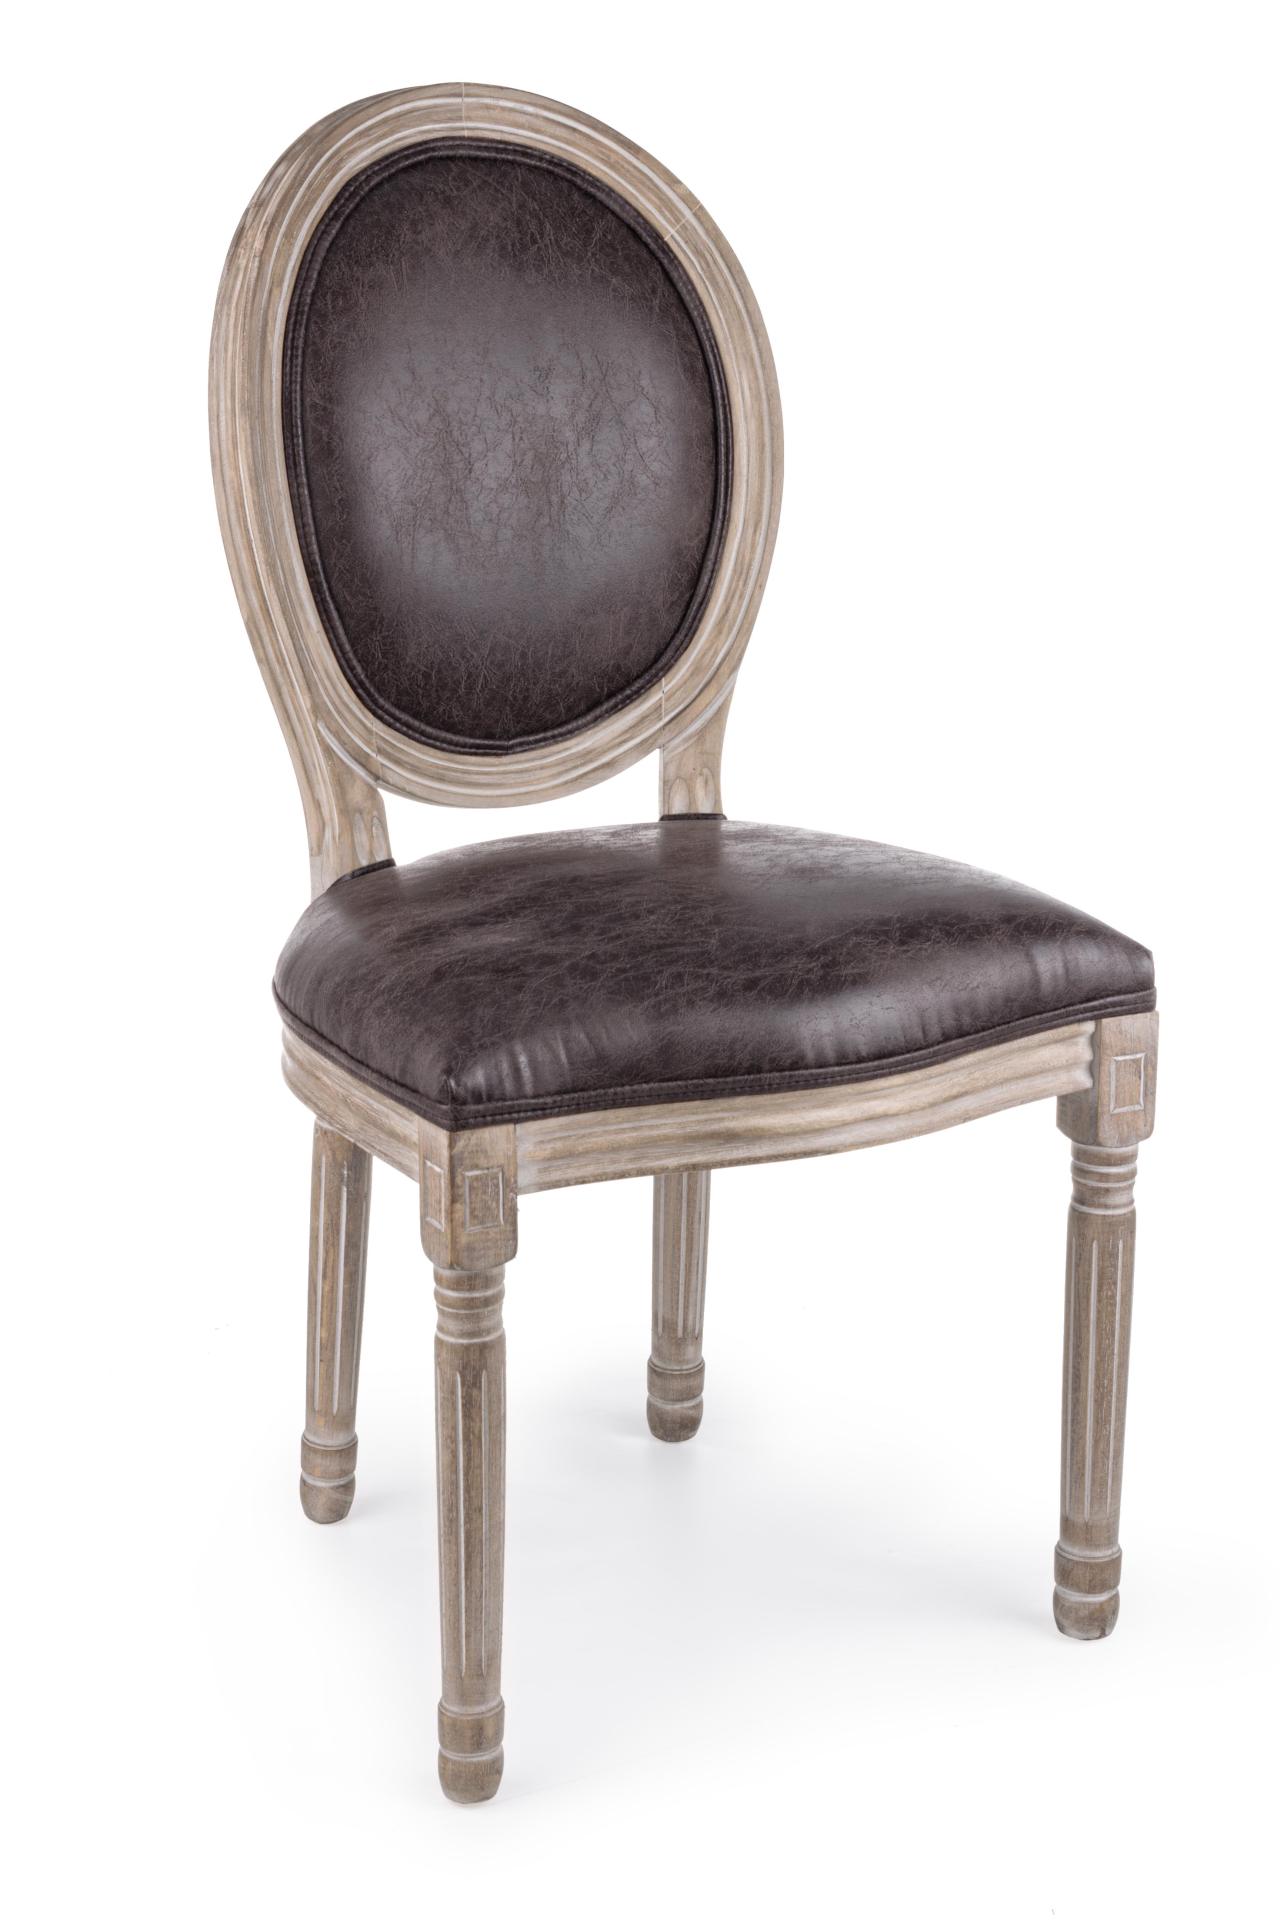 Der Stuhl Mathilde überzeugt mit seinem klassischem Design gefertigt wurde der Stuhl aus Birkenholz, welches natürlich gehalten ist. Die Sitz- und Rückenfläche ist aus einem Kunststoff-Bezug, welcher einen braunen Farbton besitzt. Die Sitzhöhe beträgt 48 